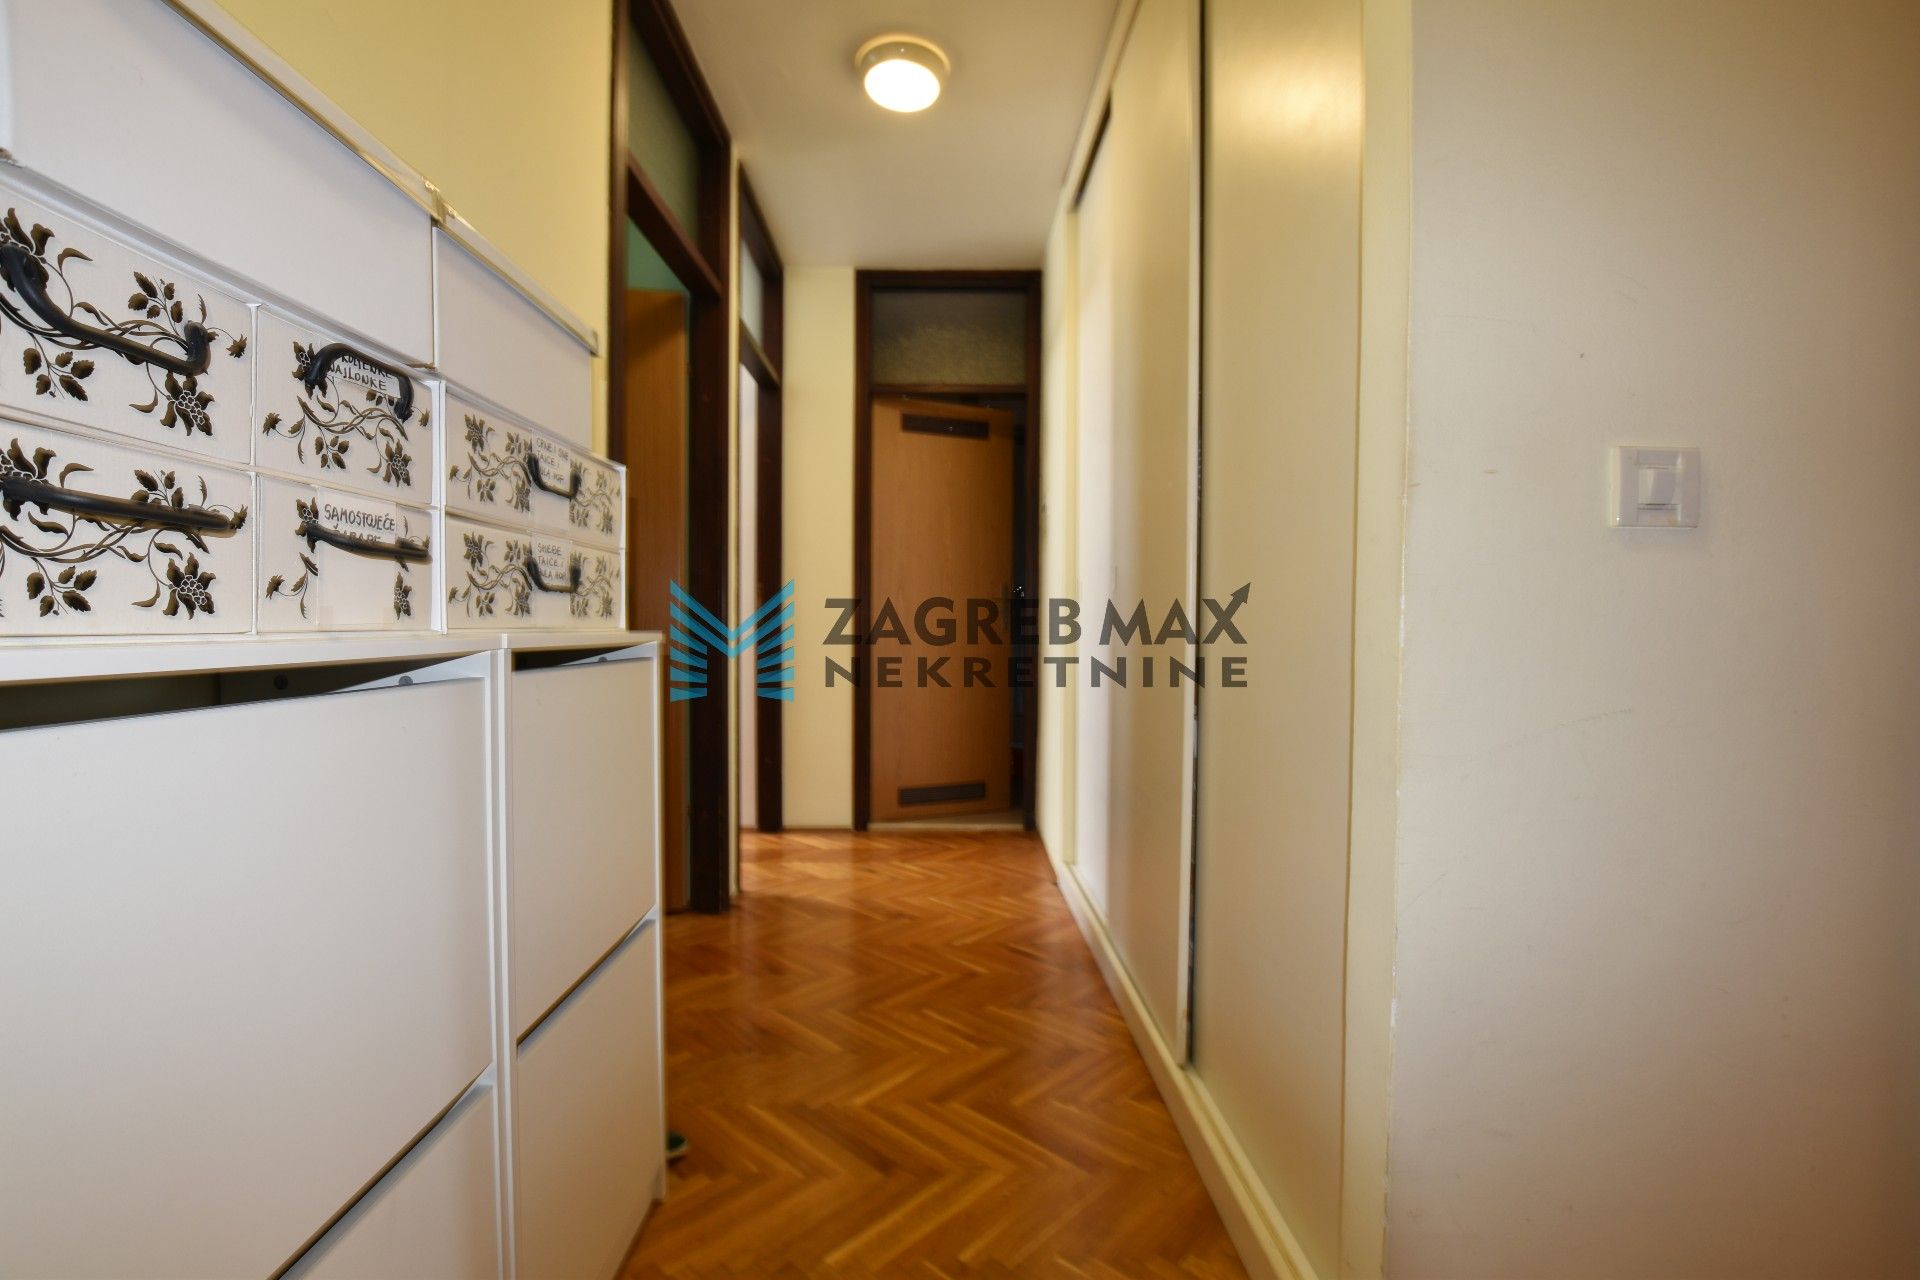 Zagreb - TREŠNJEVKA Prostran 4soban stan 100 m2, 5. kat, odlična lokacija, balkon, spremište, BEZ PROVIZIJE